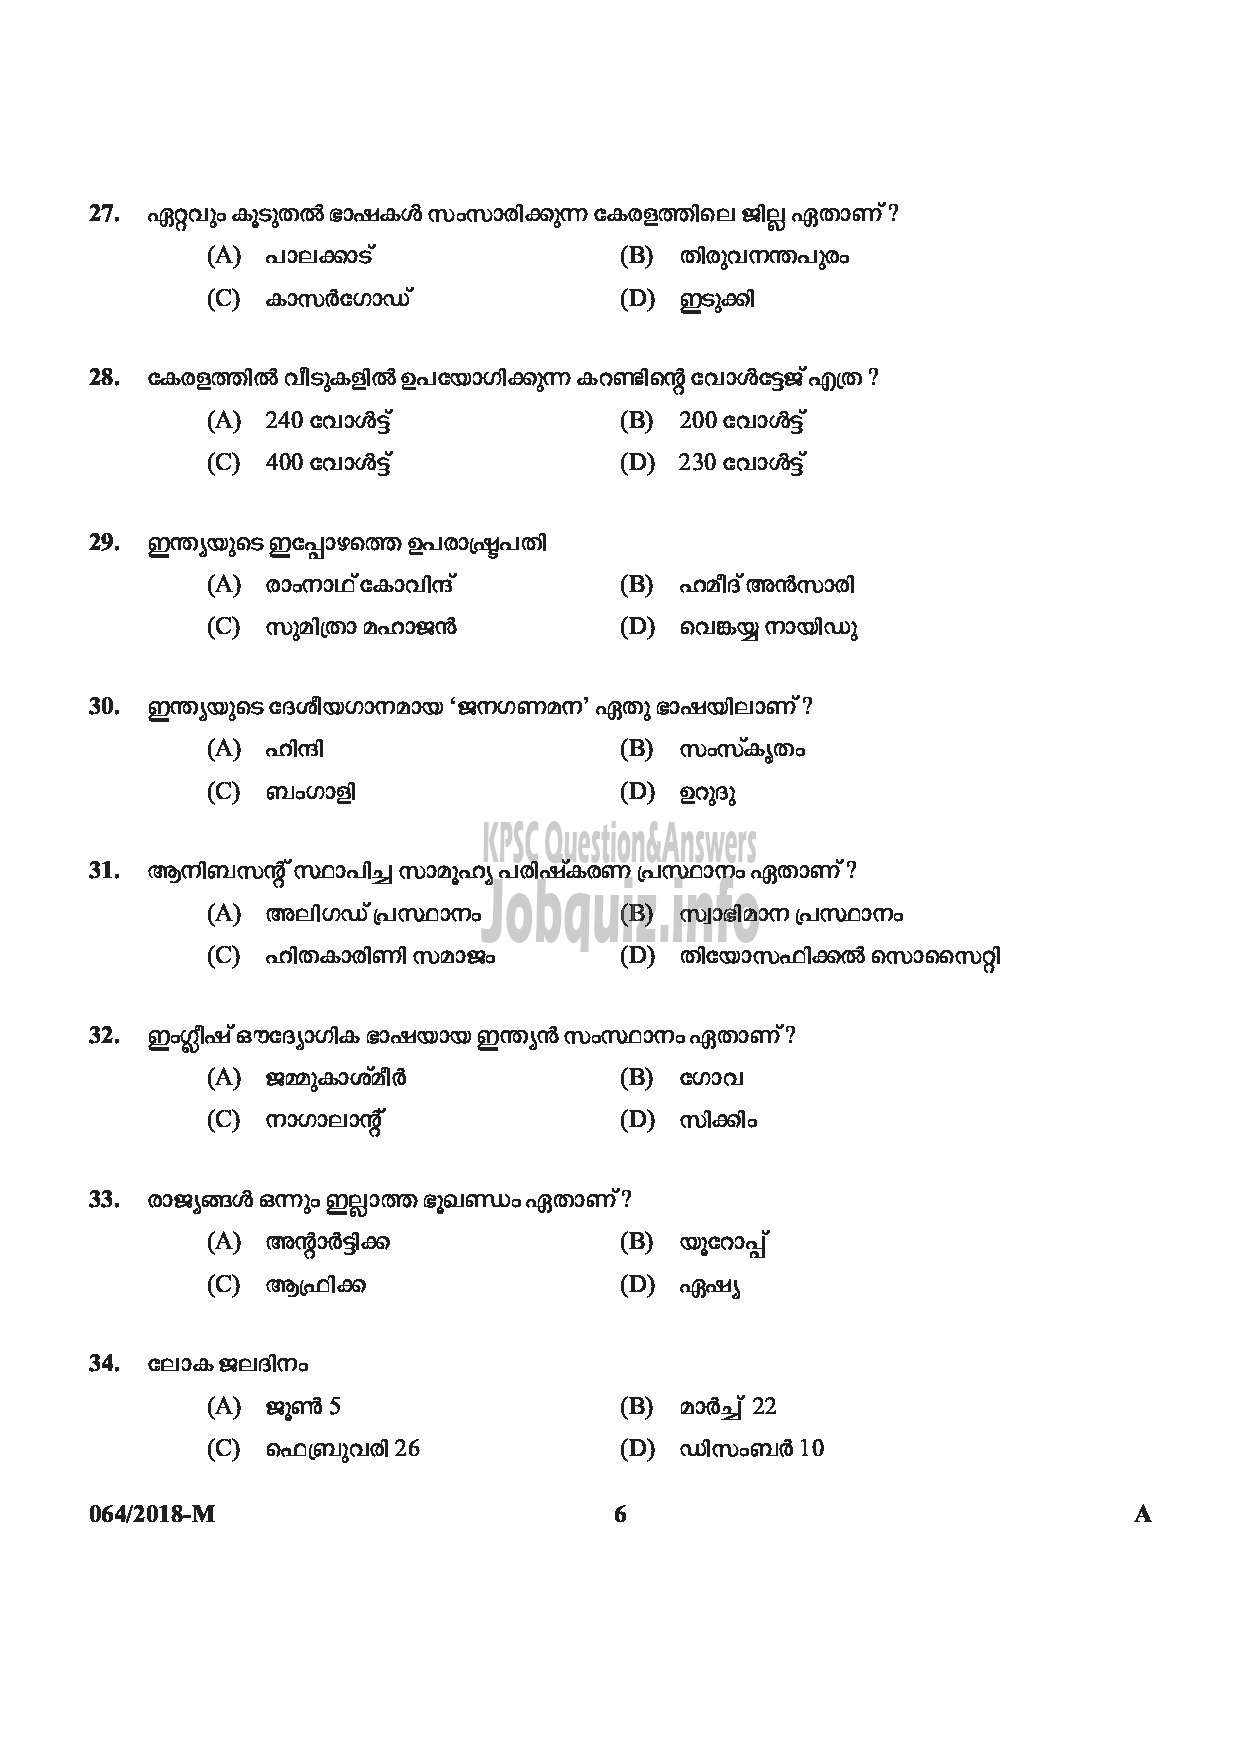 Kerala PSC Question Paper - LAST GRADE SERVANTS EXSERVICEMAN NCC SAINIK WELFARE-6